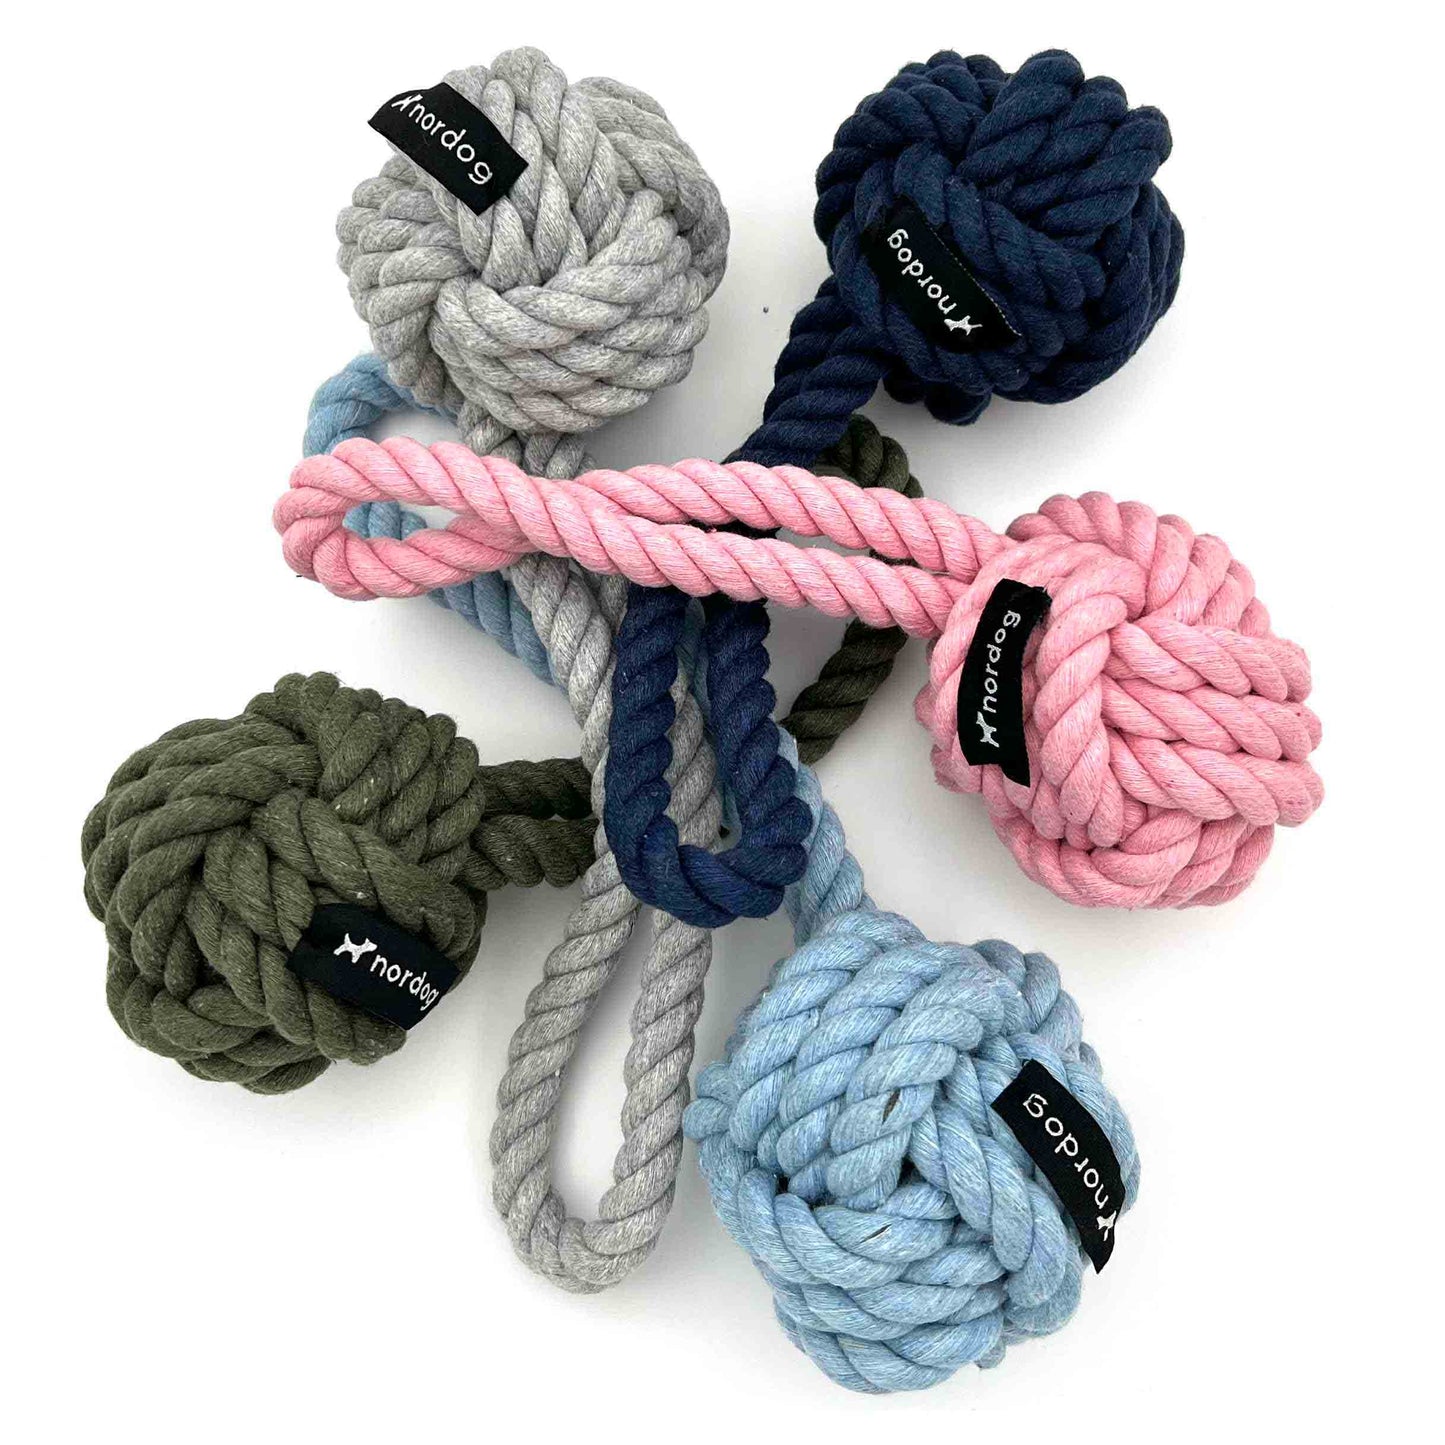 NORDOG Original Seilspielzeug für Hunde | Seil mit Knoten